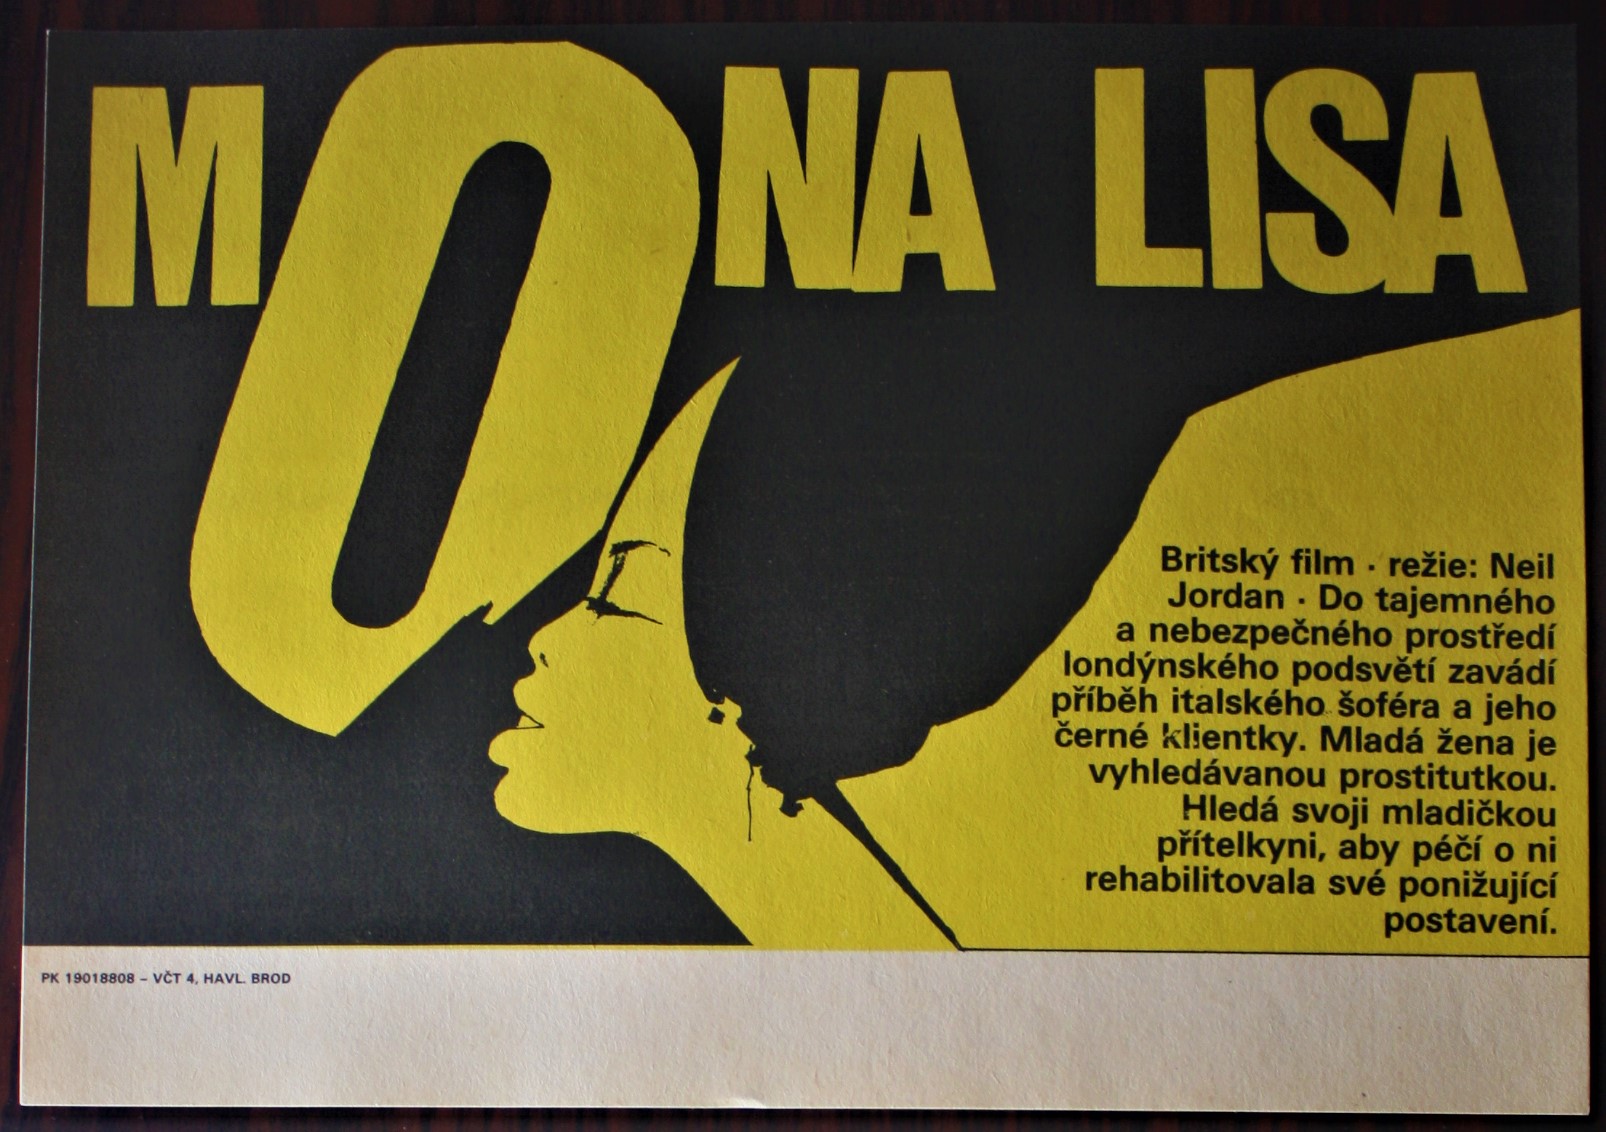 Mona Lisa 1986年 イギリス映画監督 Neil Jordan Iニール ジョーダン監督 ボブ ホスキンス主演のイギリス映画 モナリザ のチラシ ご注文は チェコの映画ポスター販売のcestaへ